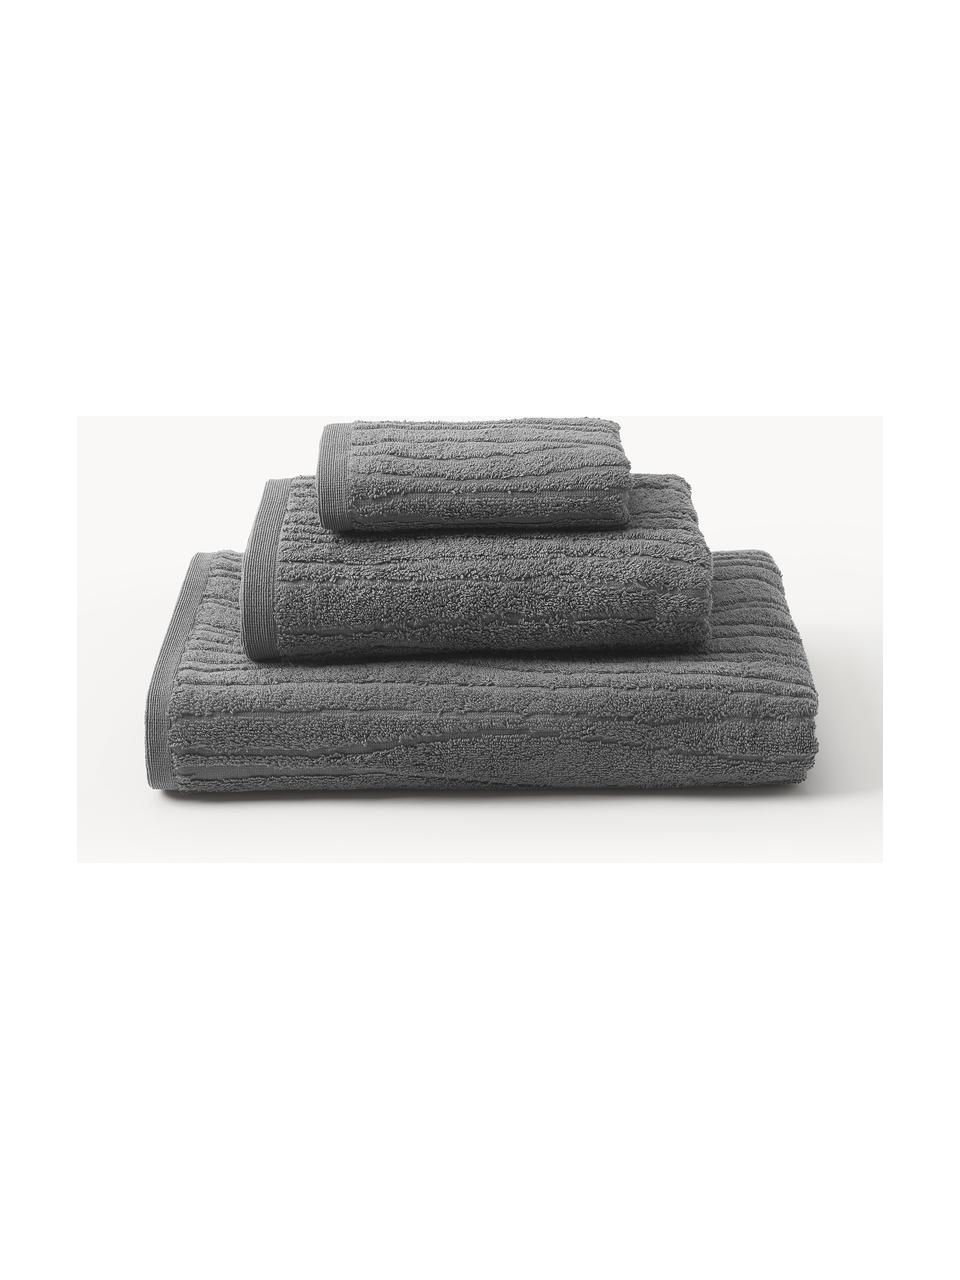 Lot de serviettes de bain en coton Audrina, tailles variées, Gris foncé, 3 éléments (1 serviette invité, 1 serviette de toilette et 1 drap de bain)